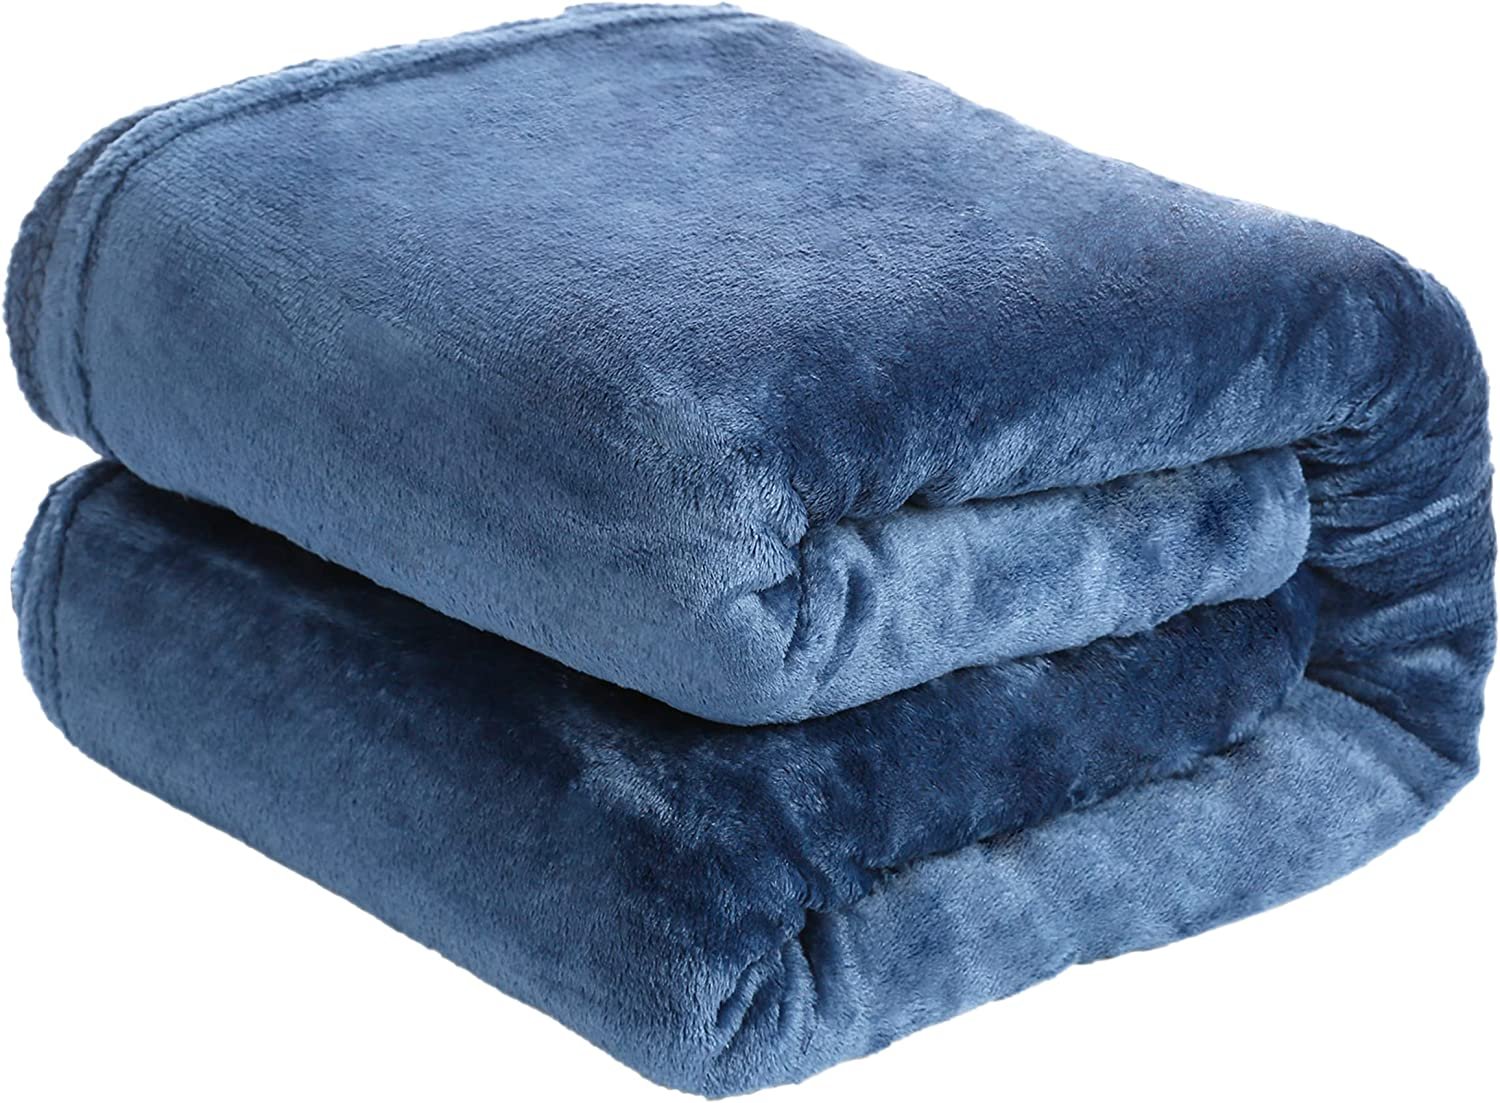  Manta azul azul carbón gris para sofá, cama o sofá, manta de  felpa suave y mullida, súper acogedora y para todas las estaciones, diseño  de líneas triangulares, rayas, 30 x 40